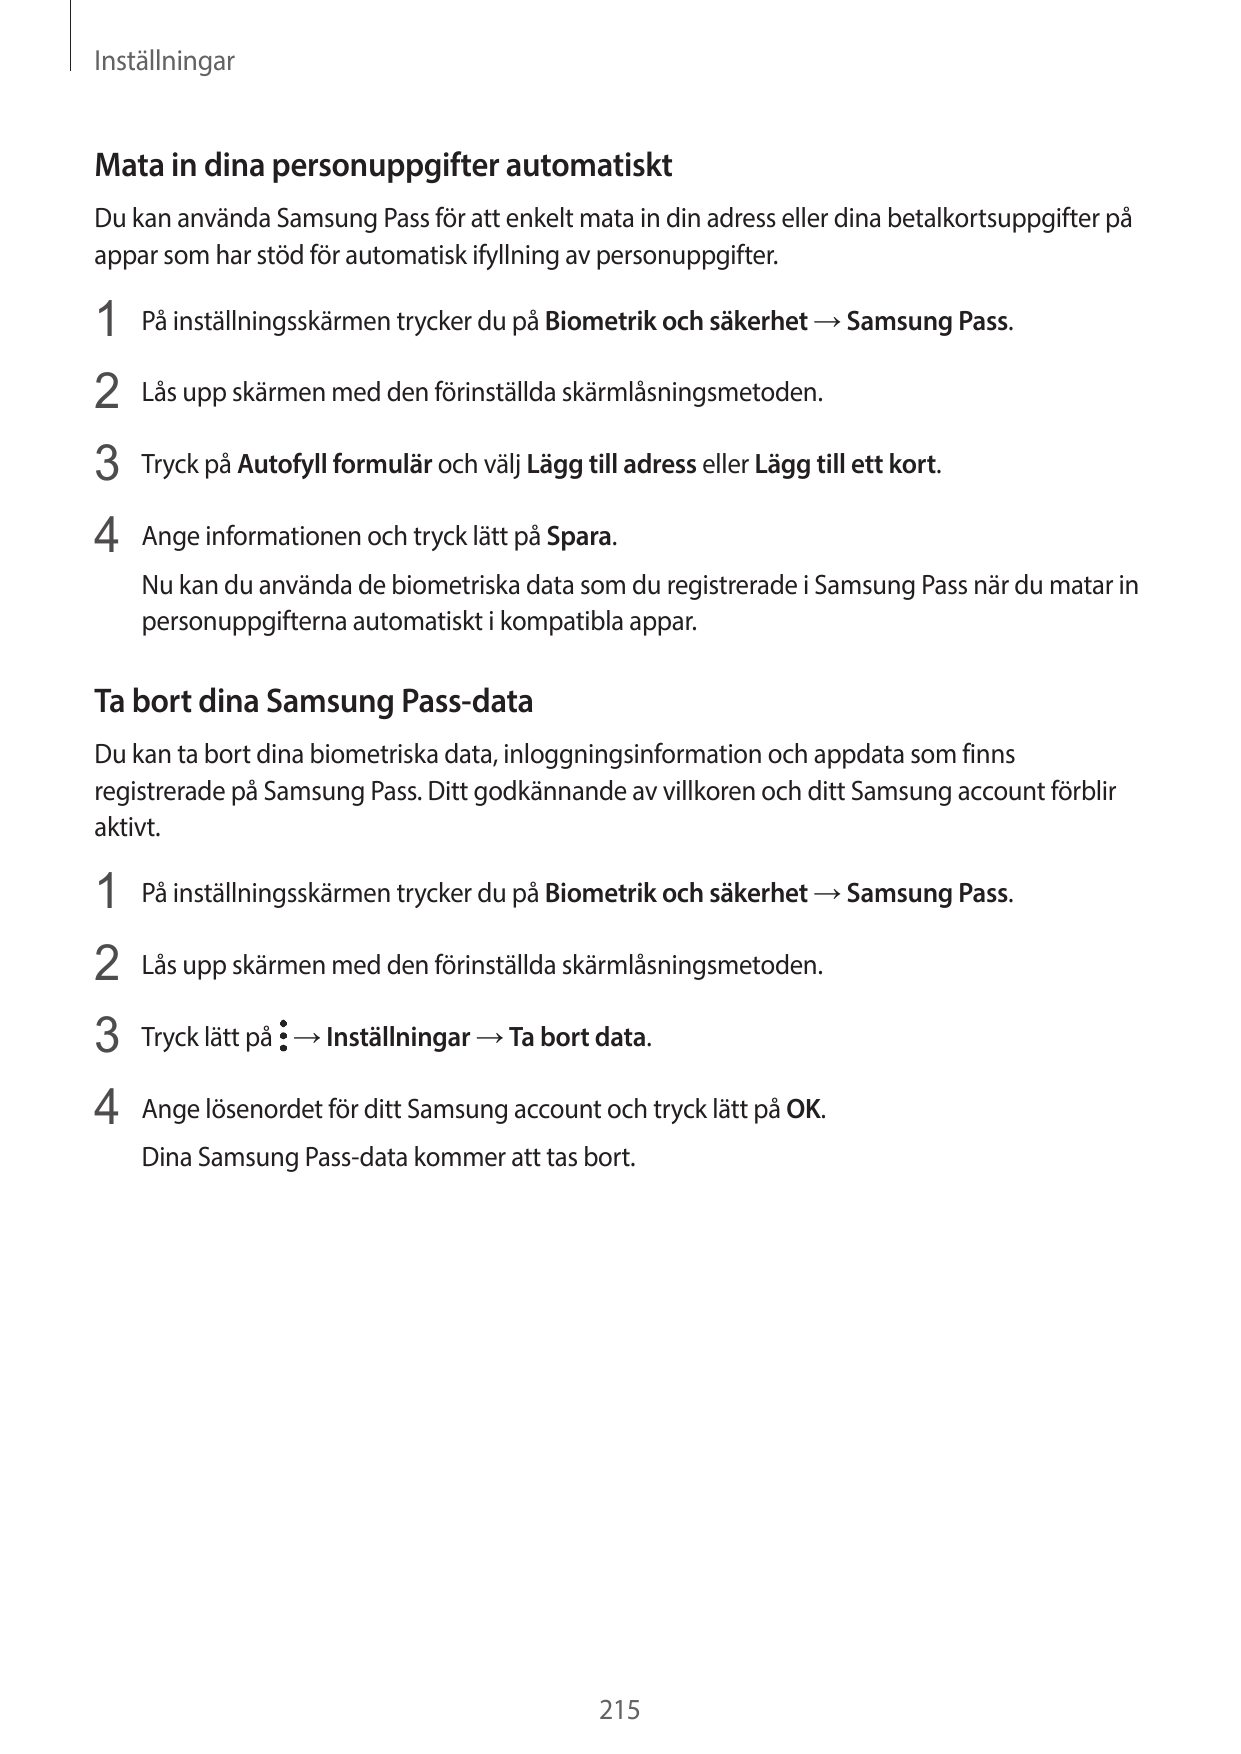 InställningarMata in dina personuppgifter automatisktDu kan använda Samsung Pass för att enkelt mata in din adress eller dina be